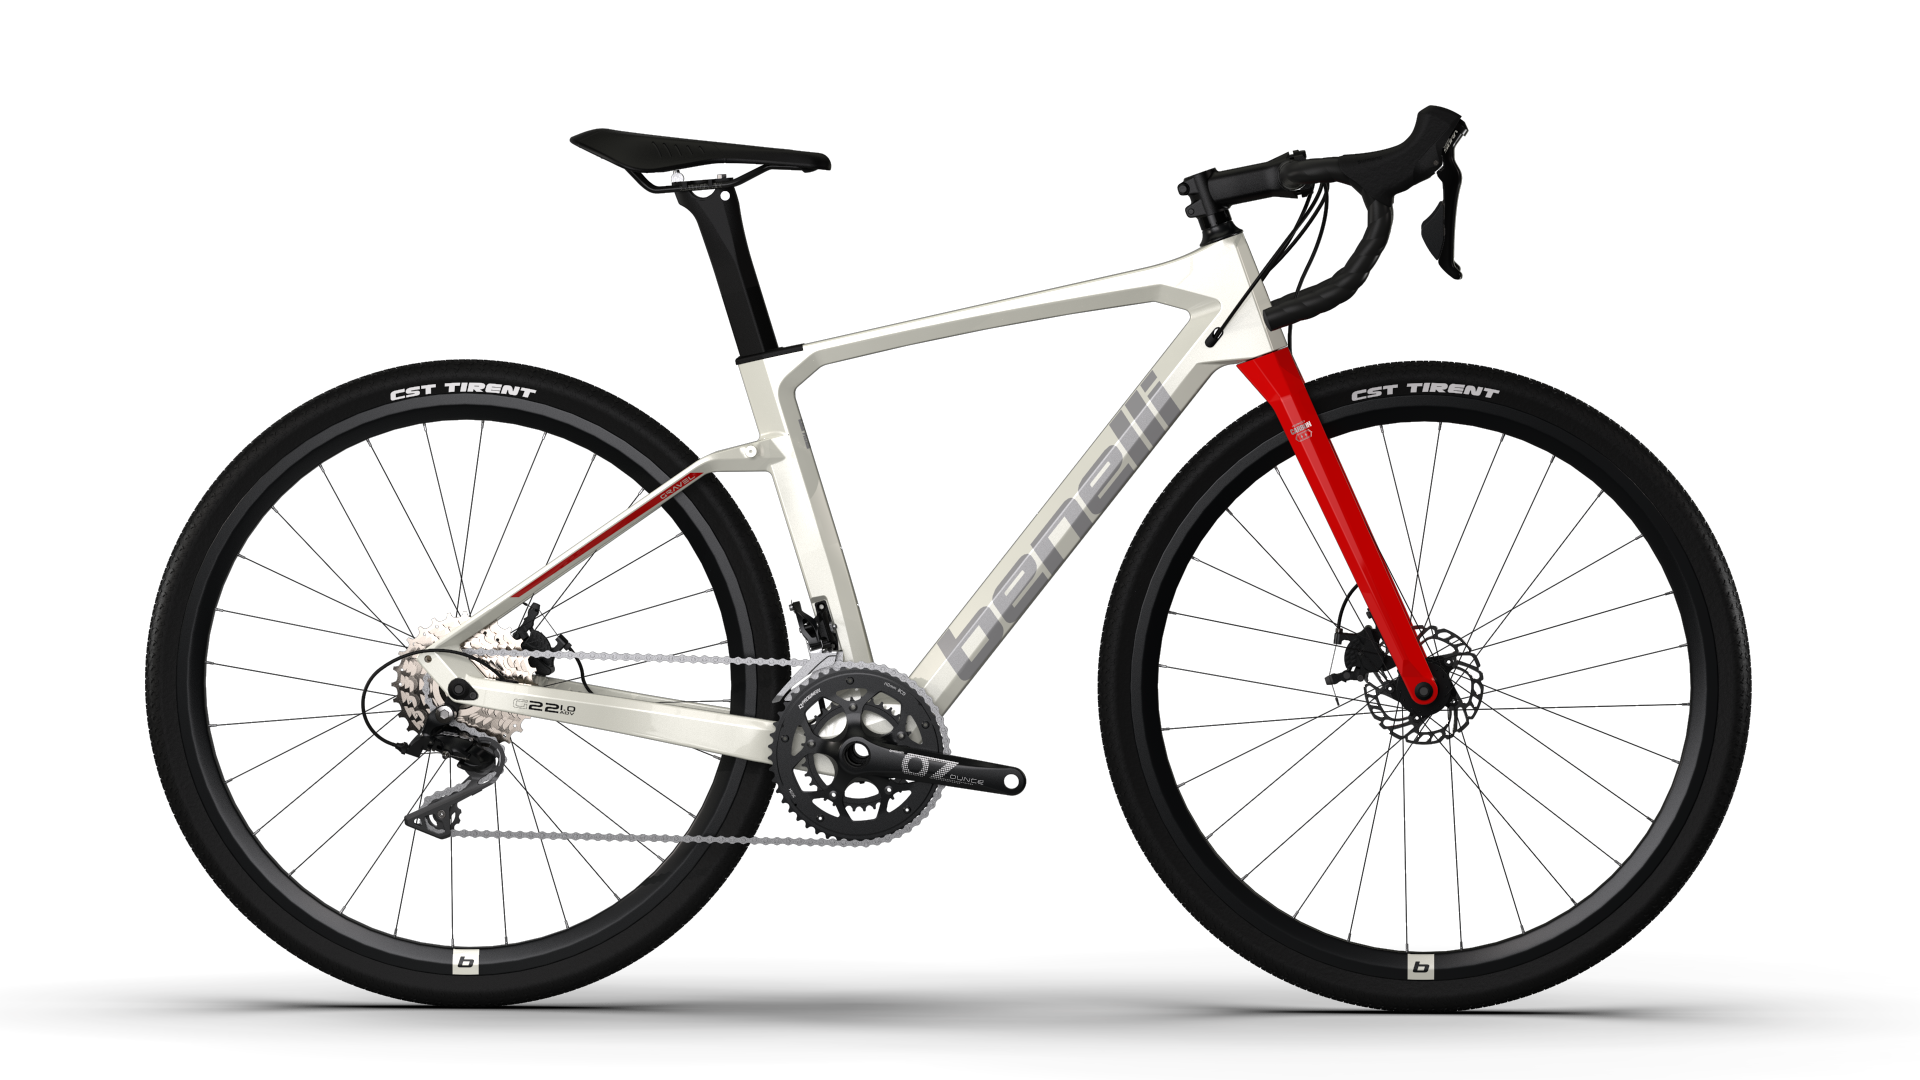 Bicicleta Gravel Benelli Carb. (G22 1.0 Adv Carb) Color Blanco/Plata Talla M